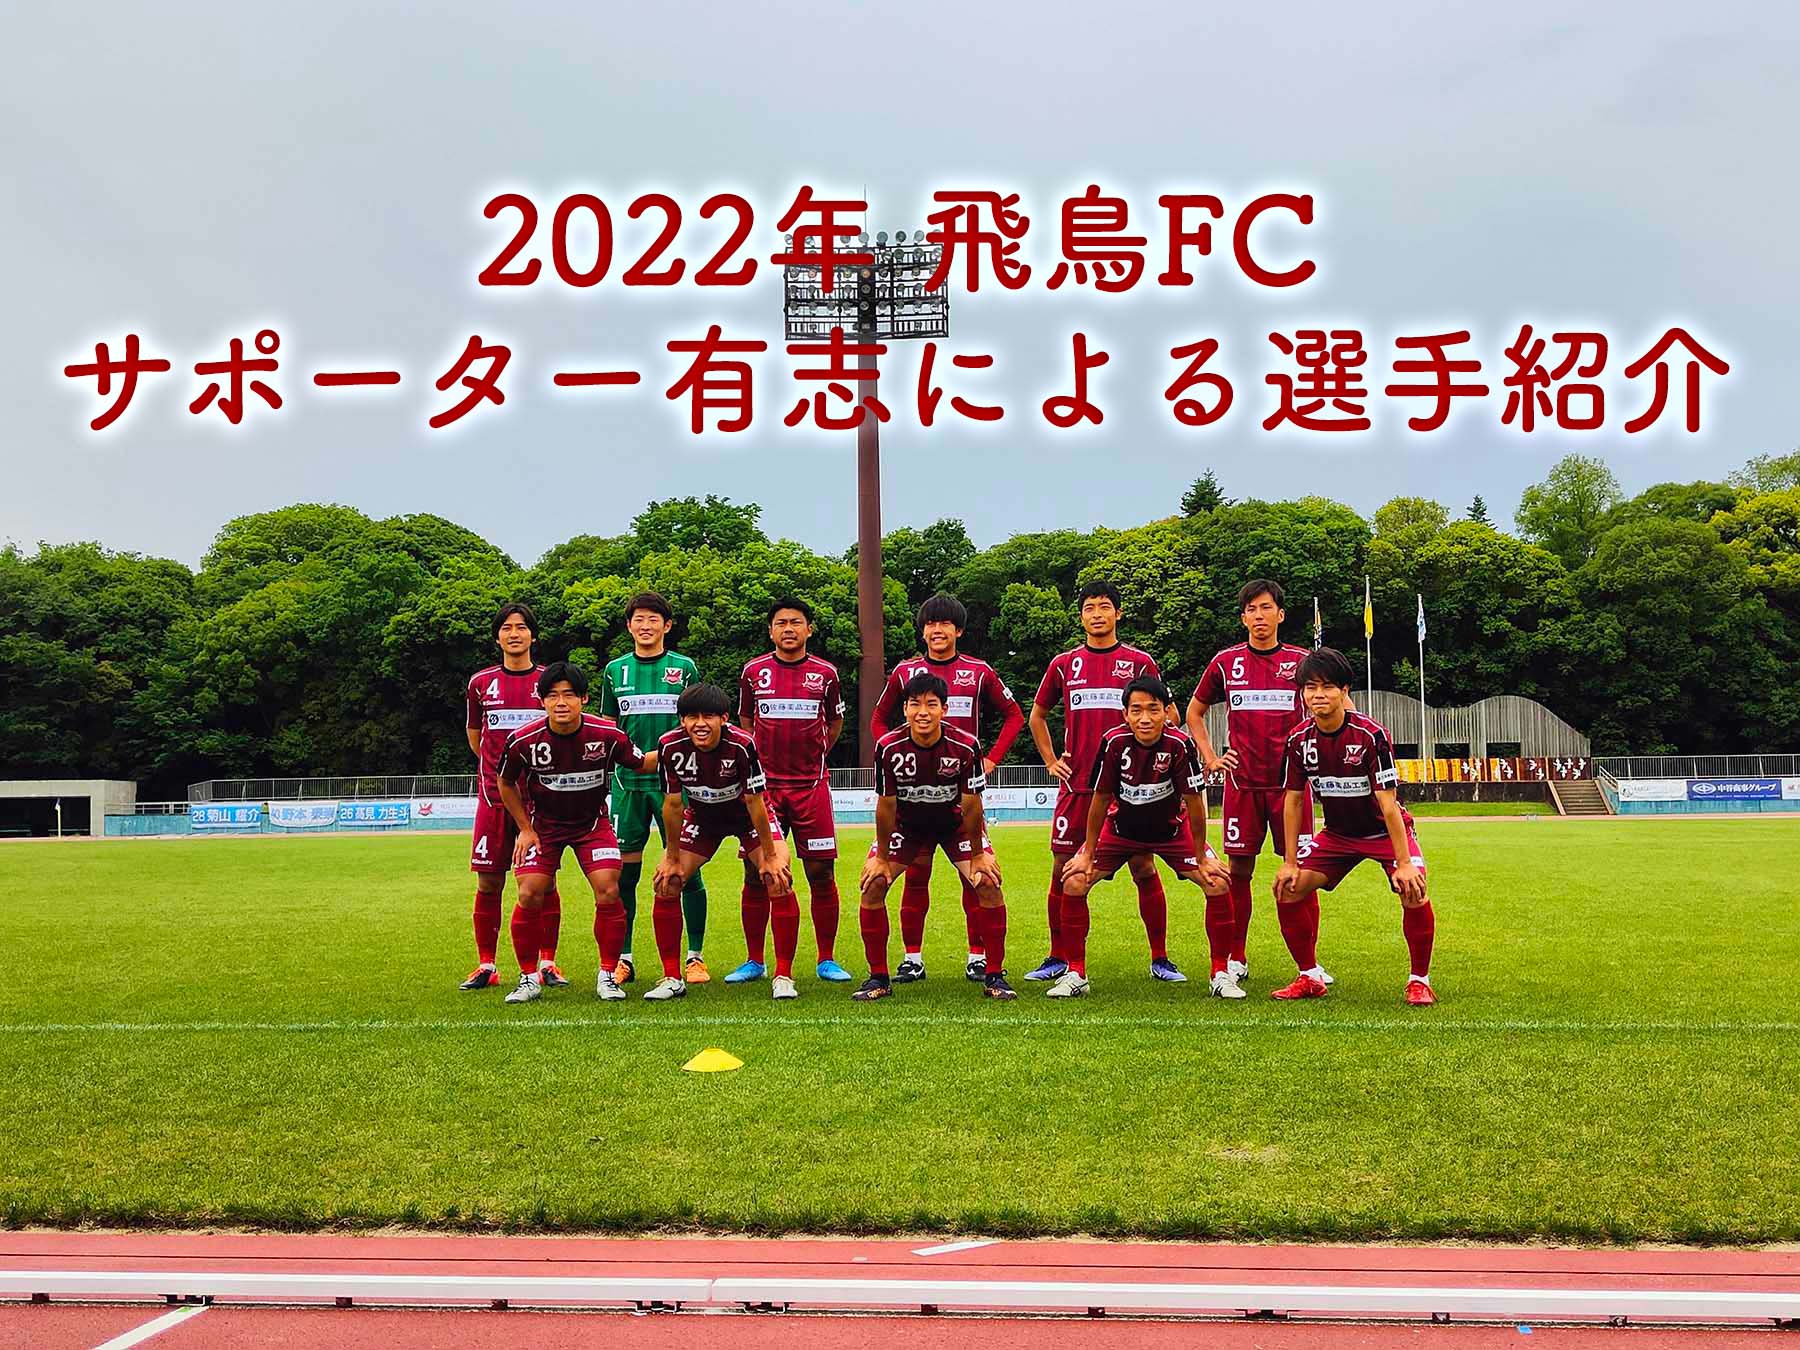 飛鳥FC 2022年 サポーター有志による選手紹介